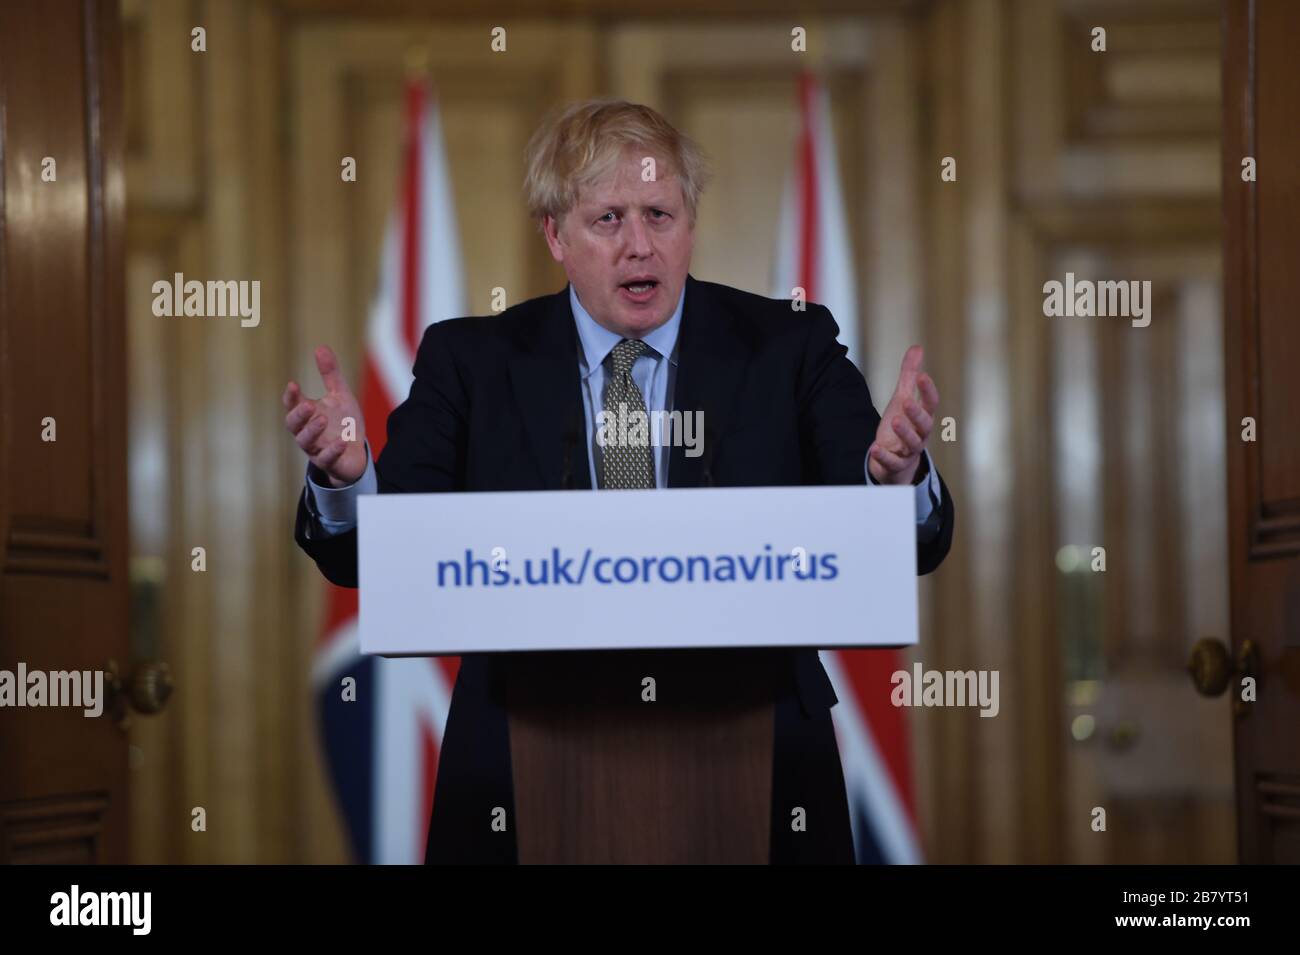 Il primo ministro Boris Johnson ha parlato in occasione di un briefing sui media a Downing Street, Londra, sul coronavirus (COVID-19), mentre l'Inghilterra del NHS ha annunciato che il numero dei decessi per coronavirus aveva raggiunto 104 nel Regno Unito. Foto Stock